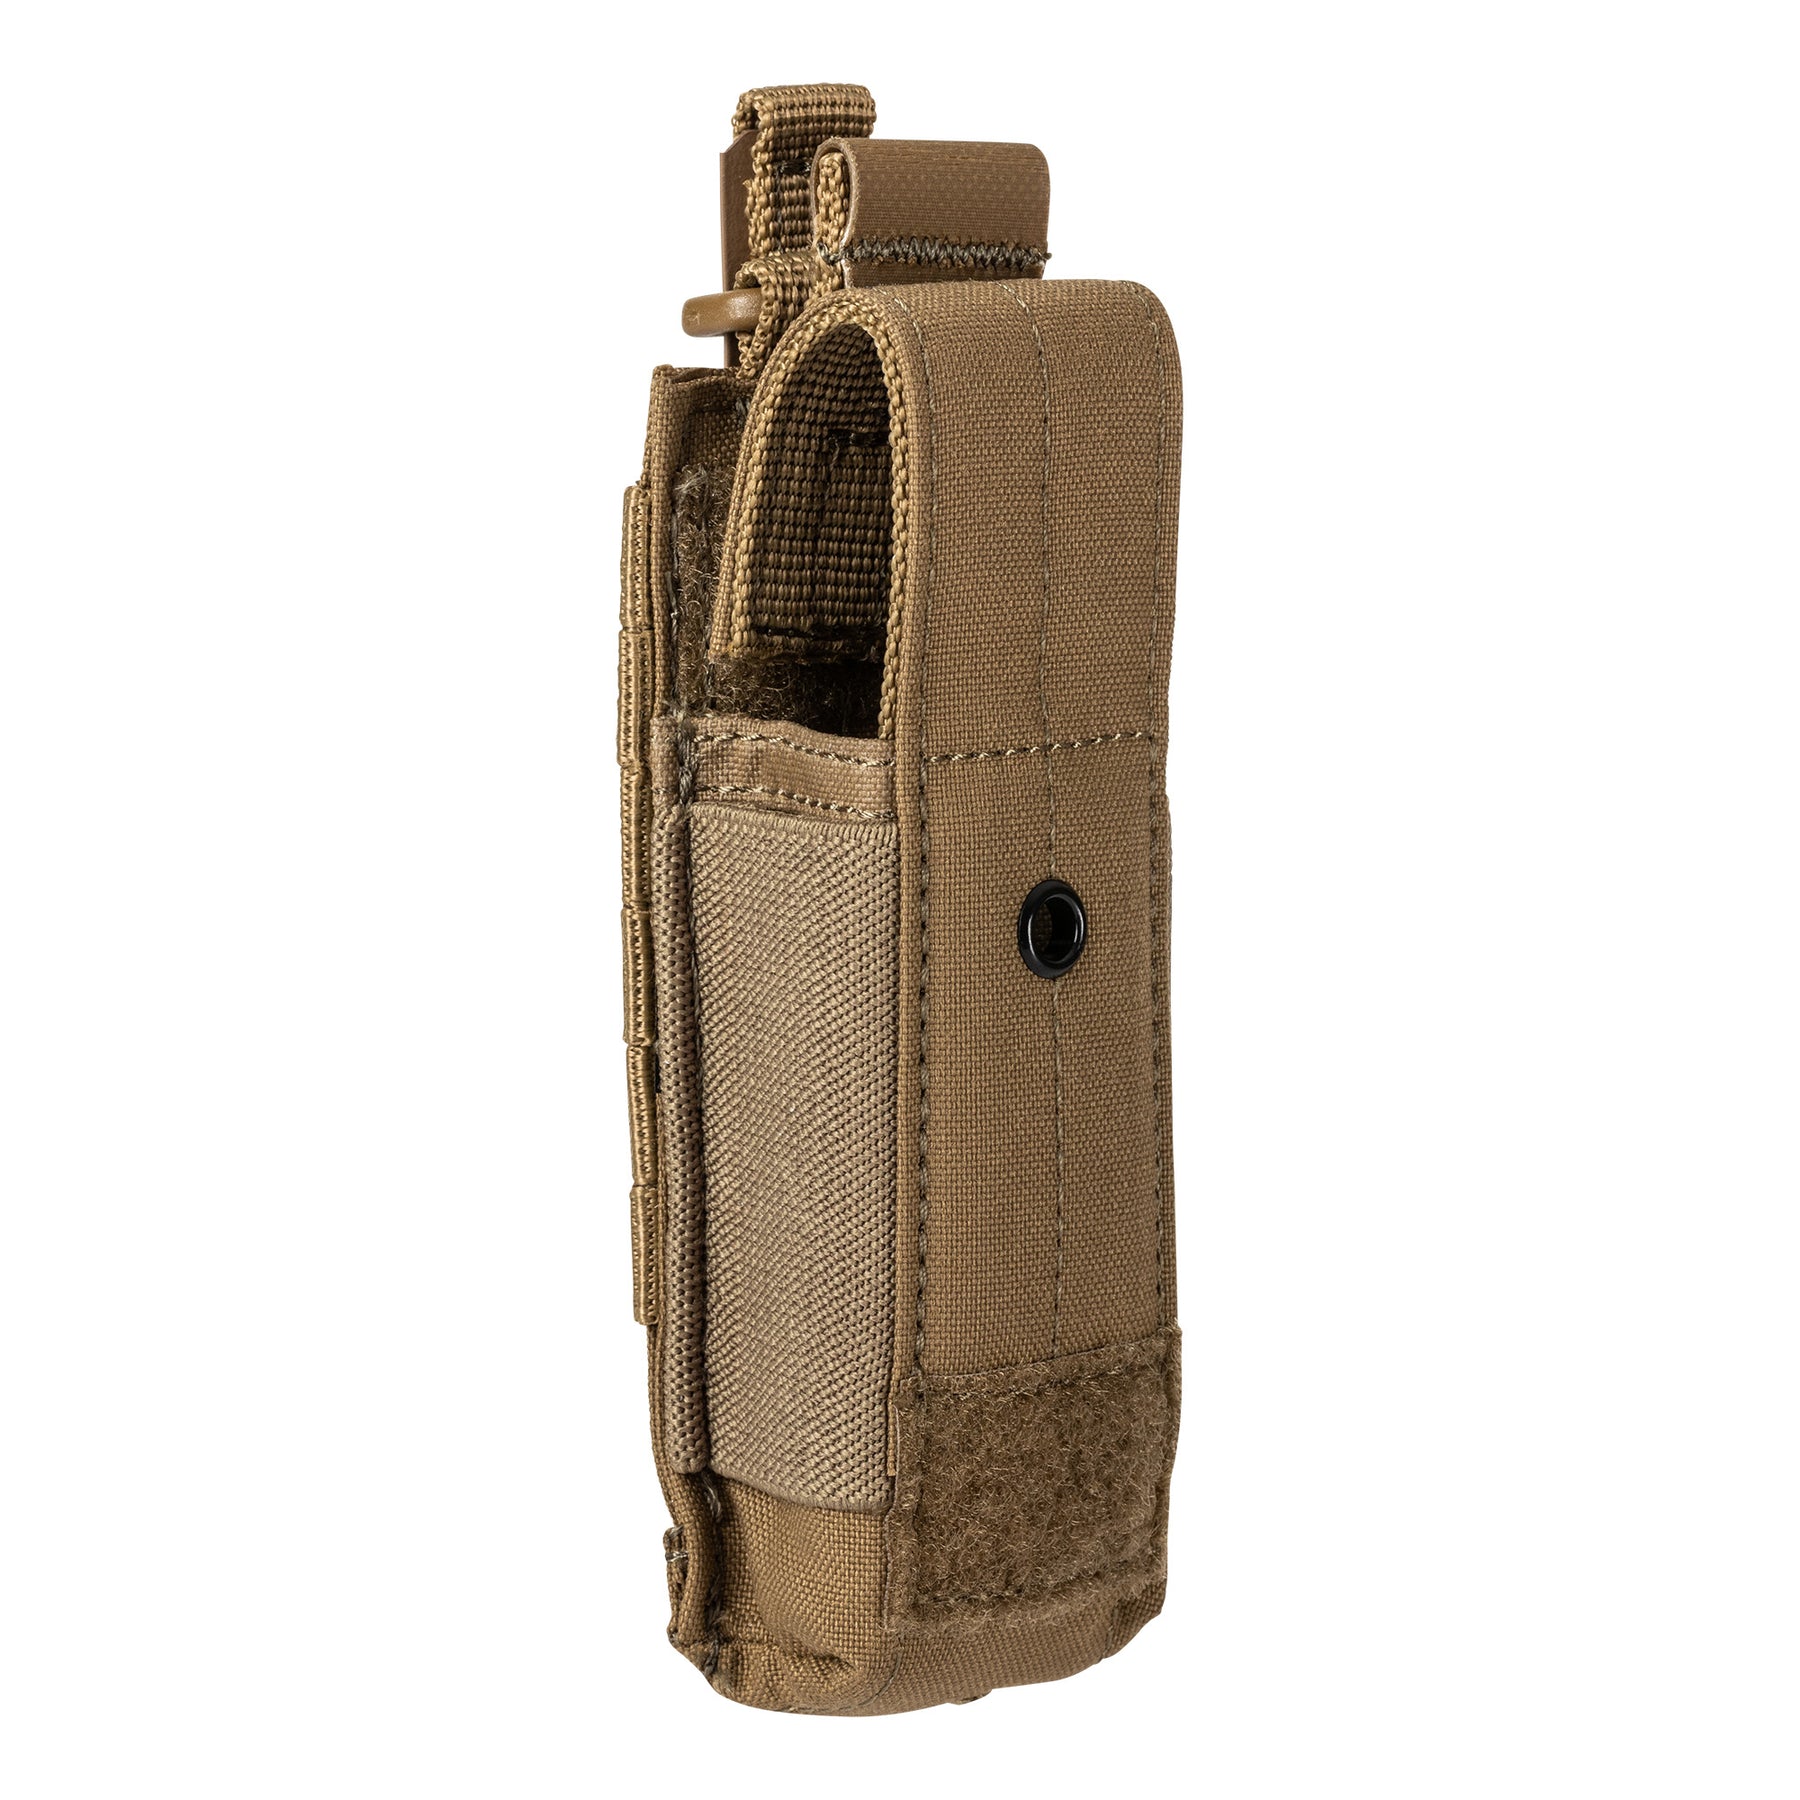 5.11 |  FLEX SINGLE PISTOL MAG COVER POUCH - Tasca porta caricatore per pistola